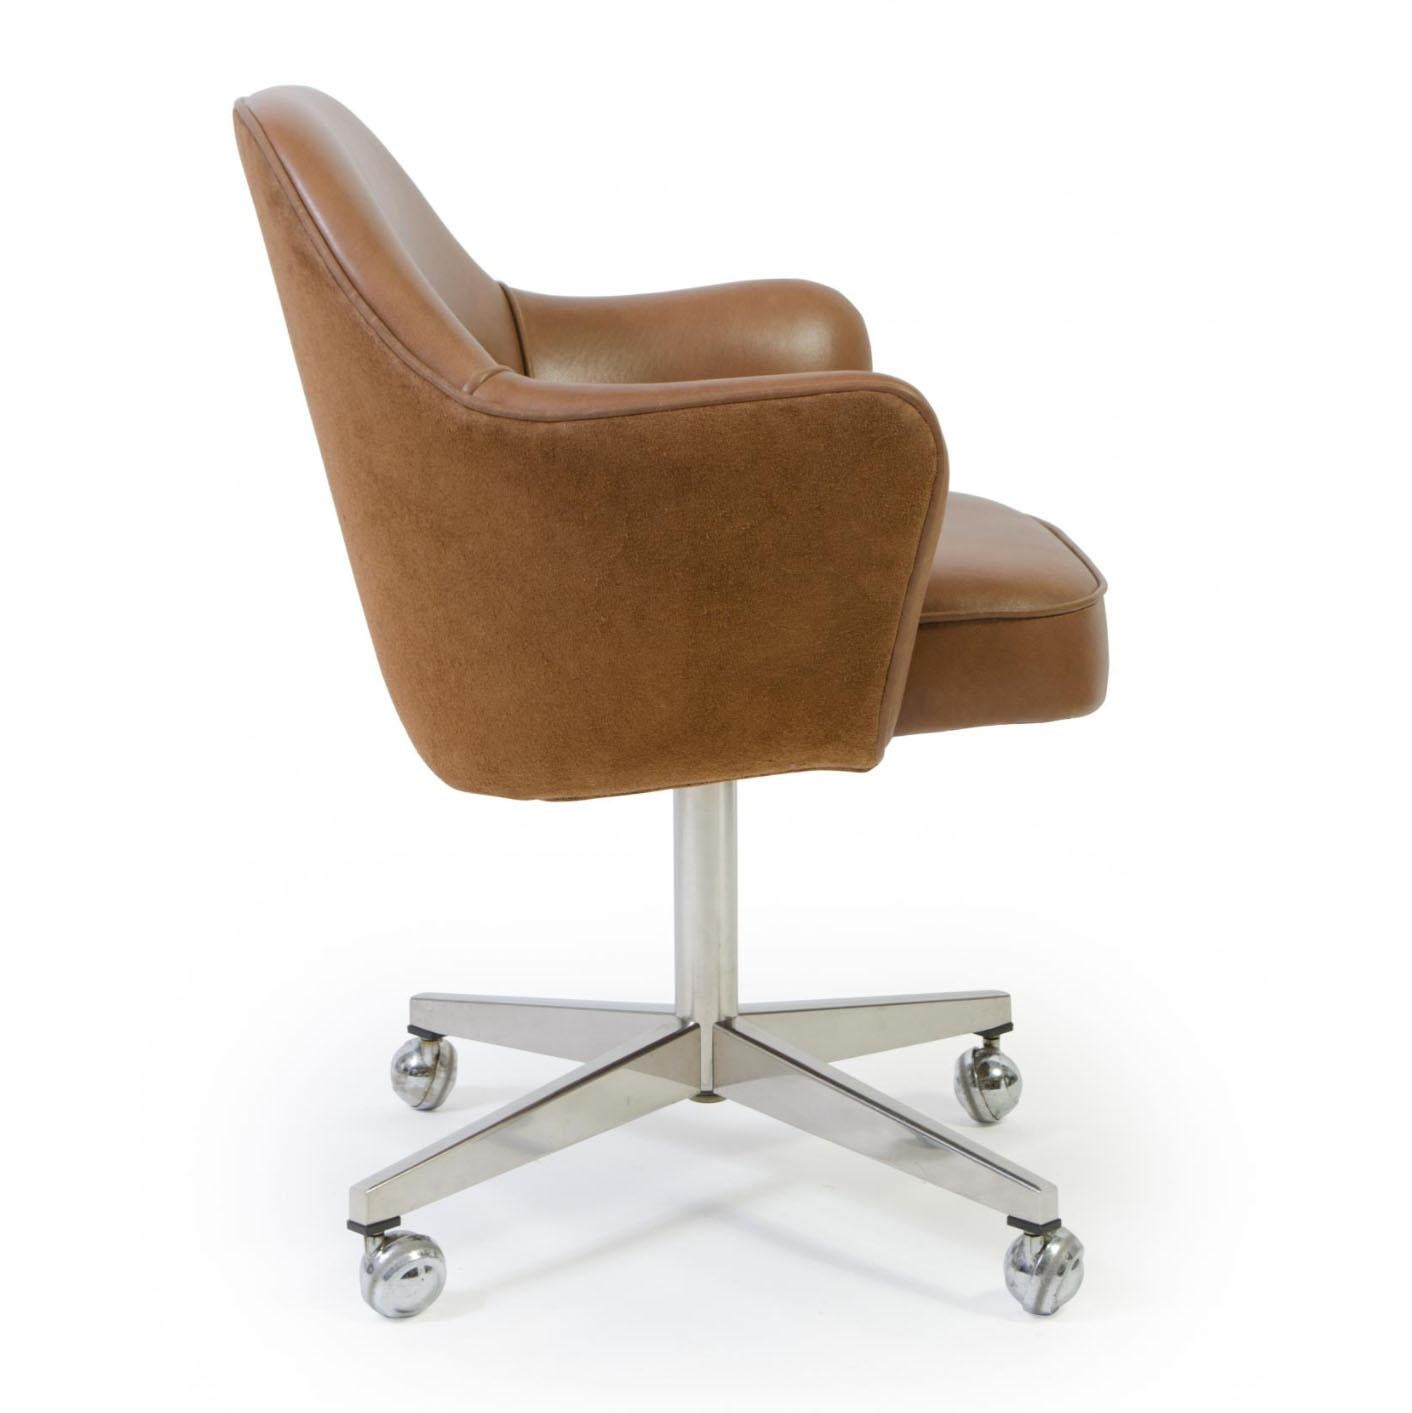 Montage restauriert seit Jahren Saarinen Executive Chairs in allen erdenklichen Stoffen, direkt in unserem eigenen Arbeitsraum. Wir haben diese Stühle in einem geschmeidigen italienischen Sattelleder restauriert und die Wildlederseite der Haut für